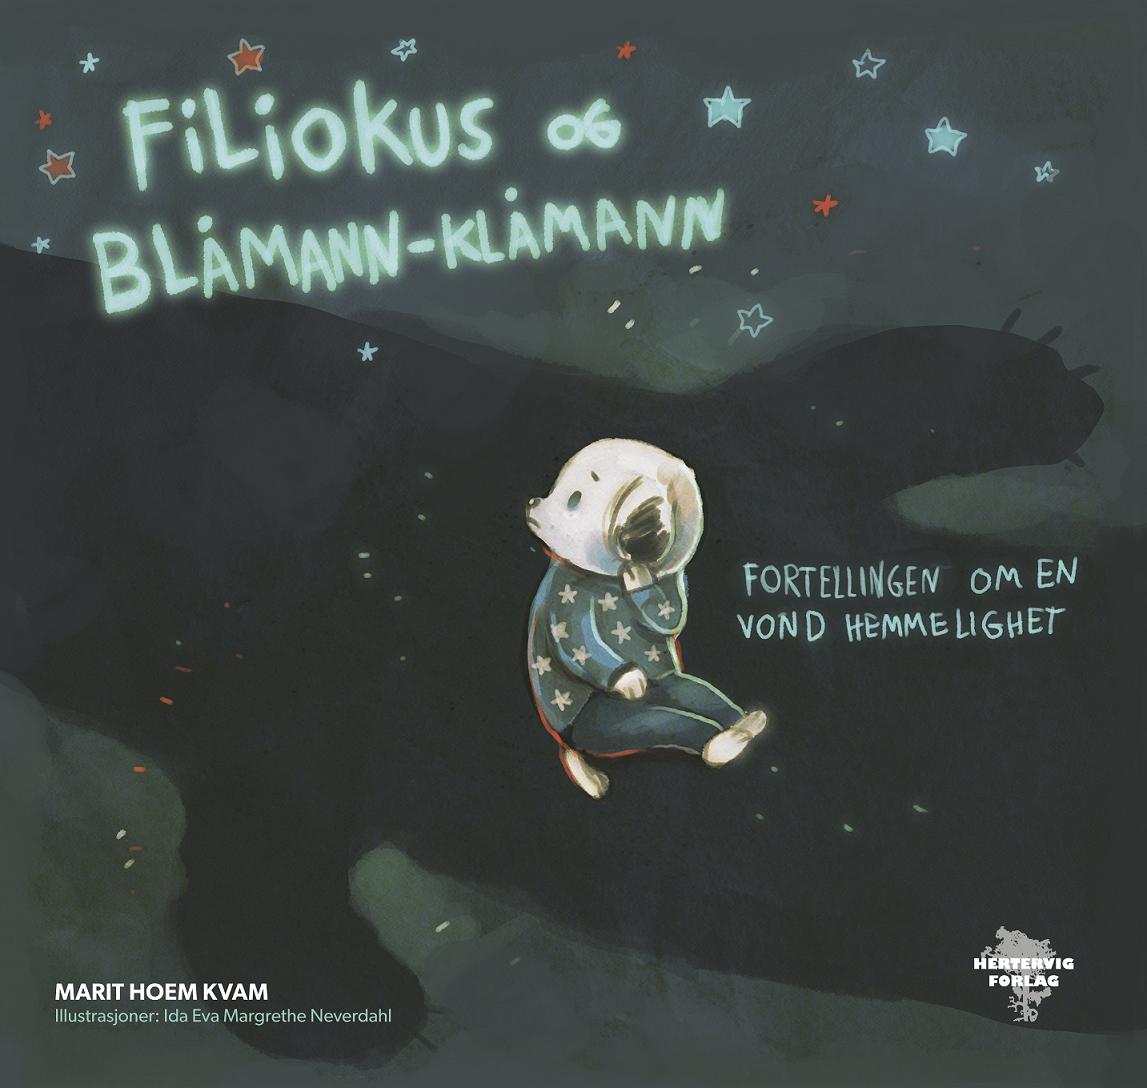 Se Filiokus og Blåmann-Klåmann